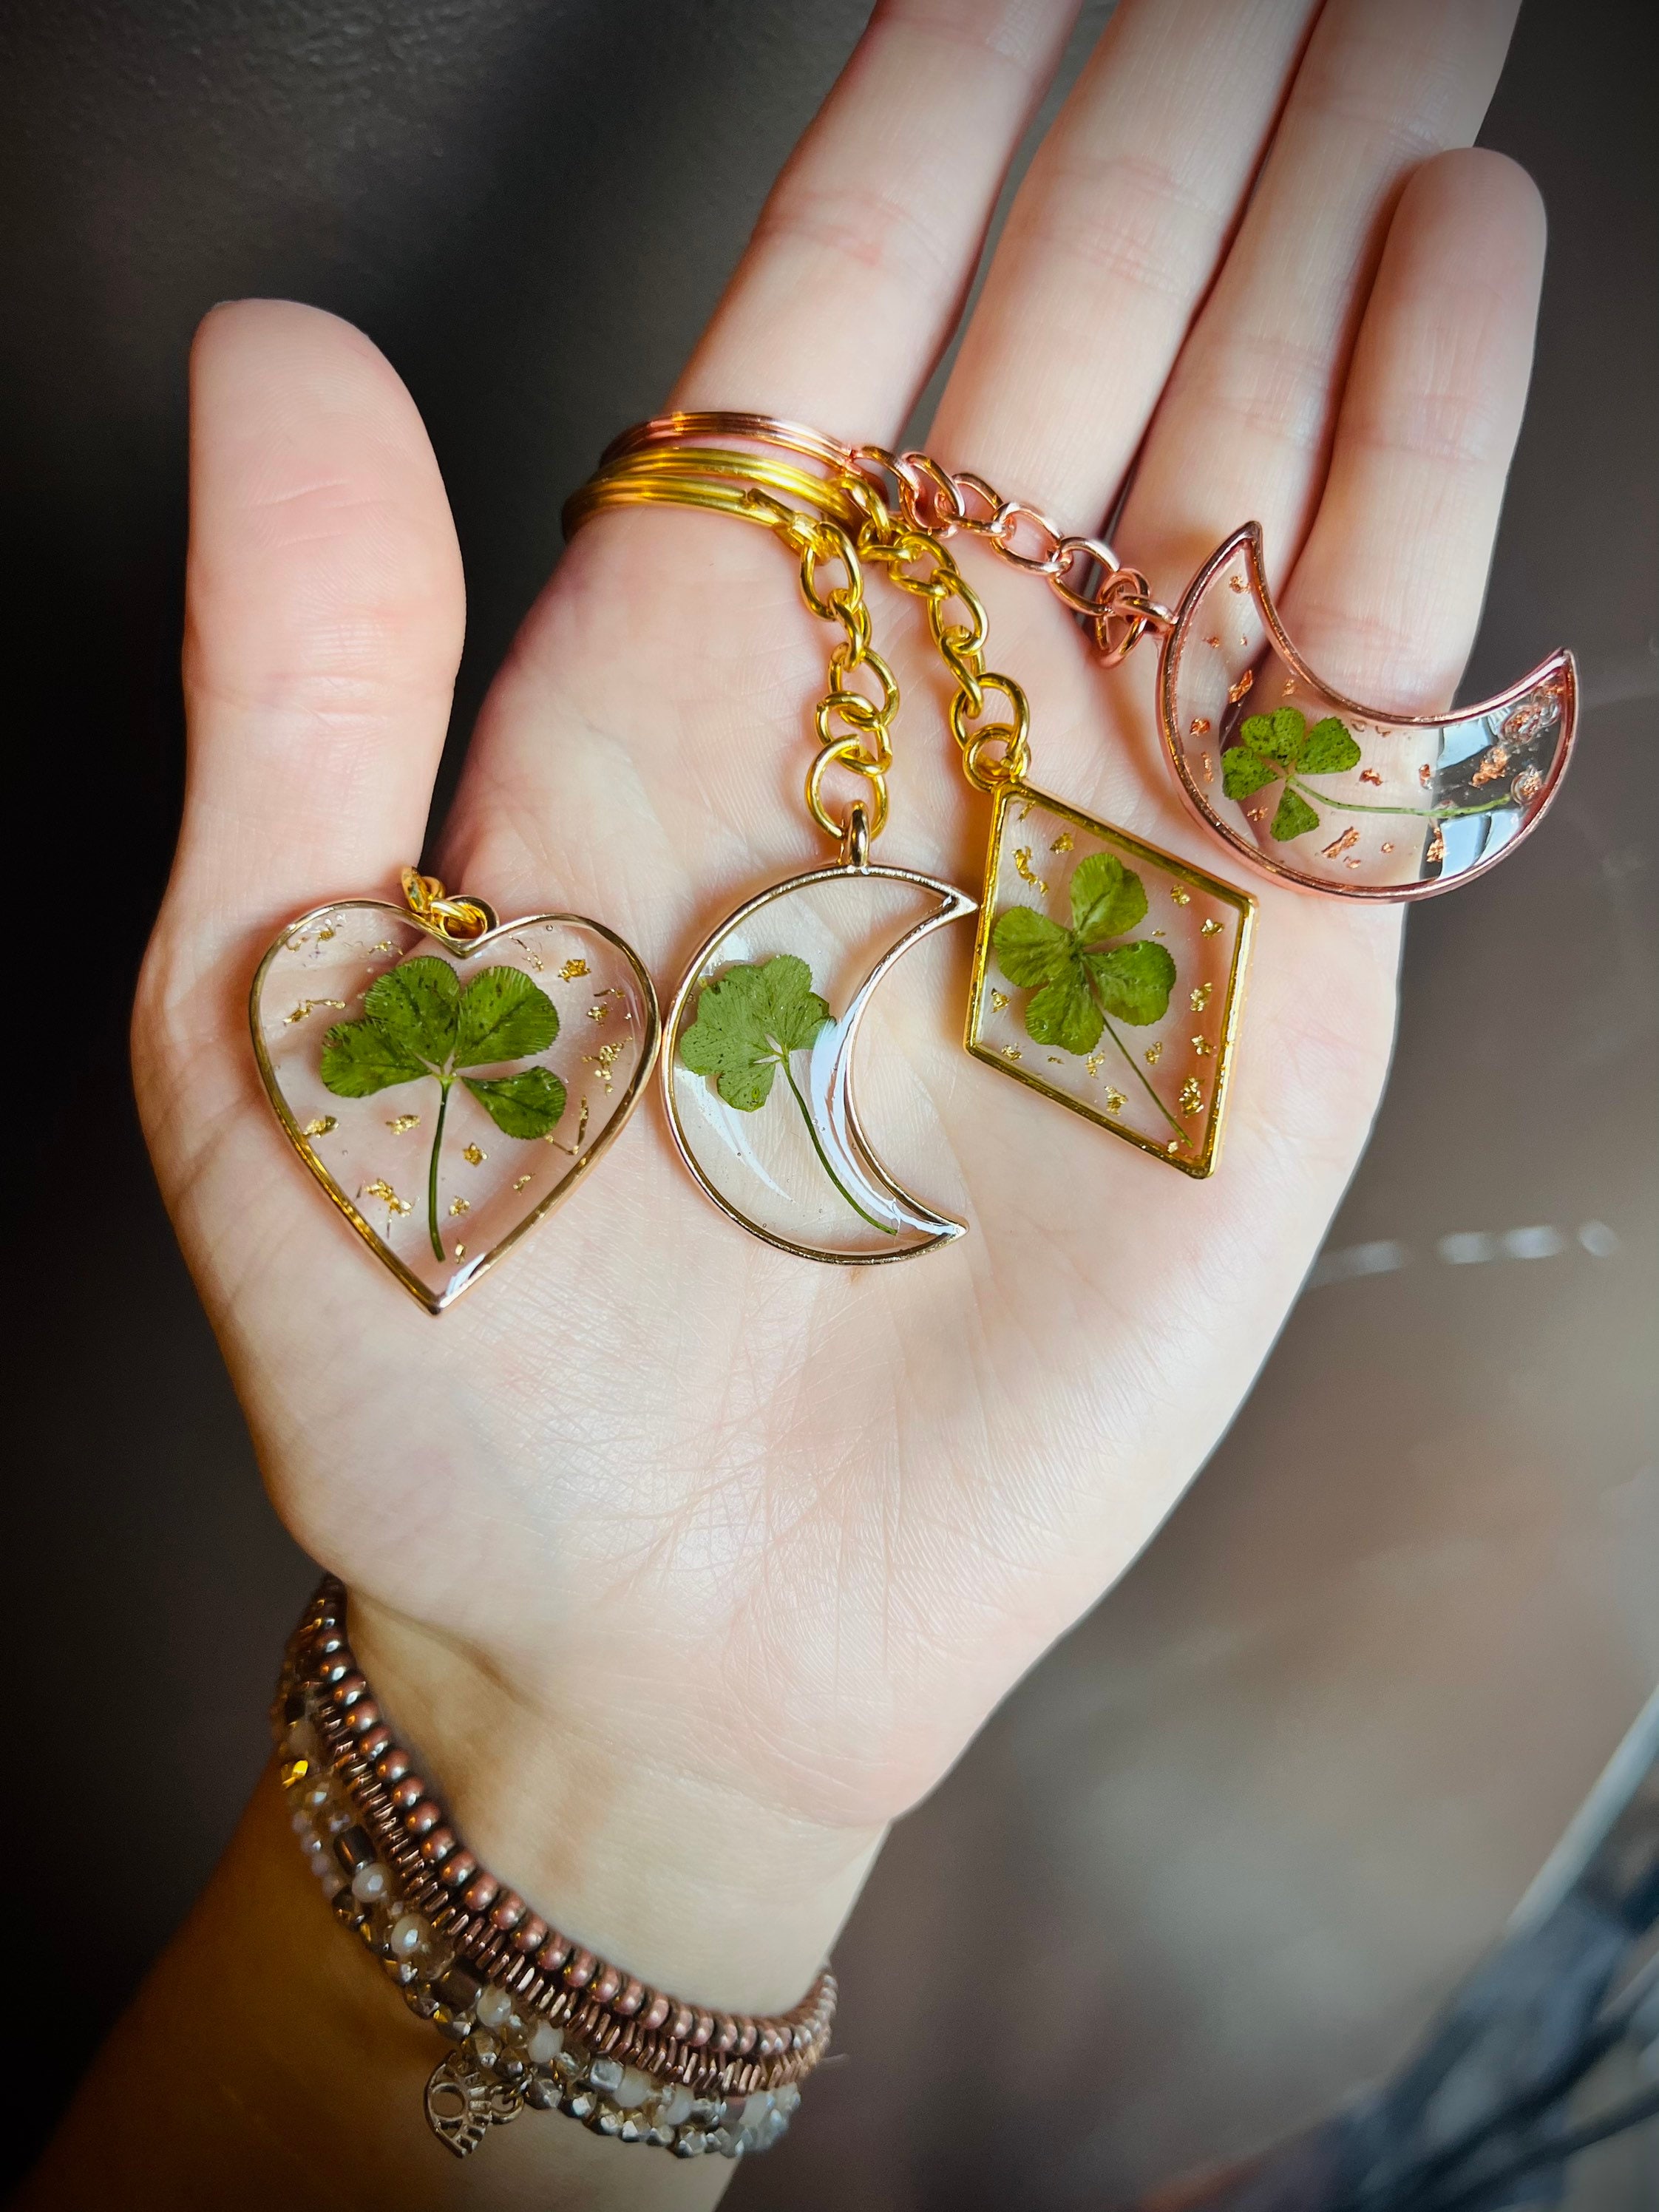 K-7 DIOR four-leaf clover XINGX tassel necklace bracelet for women